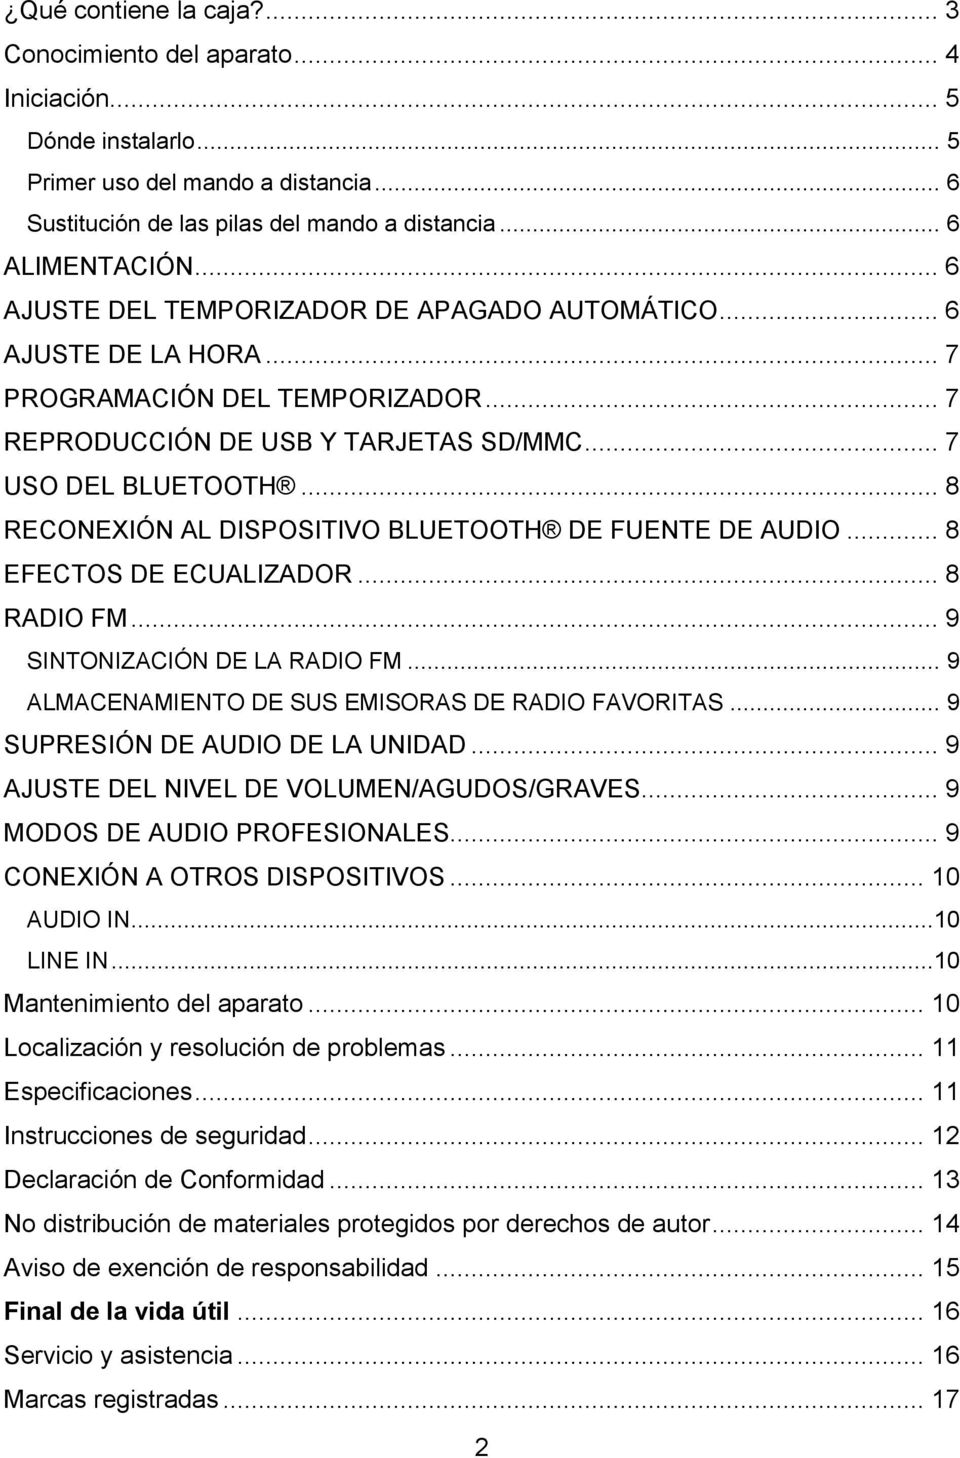 .. 8 RECONEXIÓN AL DISPOSITIVO BLUETOOTH DE FUENTE DE AUDIO... 8 EFECTOS DE ECUALIZADOR... 8 RADIO FM... 9 SINTONIZACIÓN DE LA RADIO FM... 9 ALMACENAMIENTO DE SUS EMISORAS DE RADIO FAVORITAS.